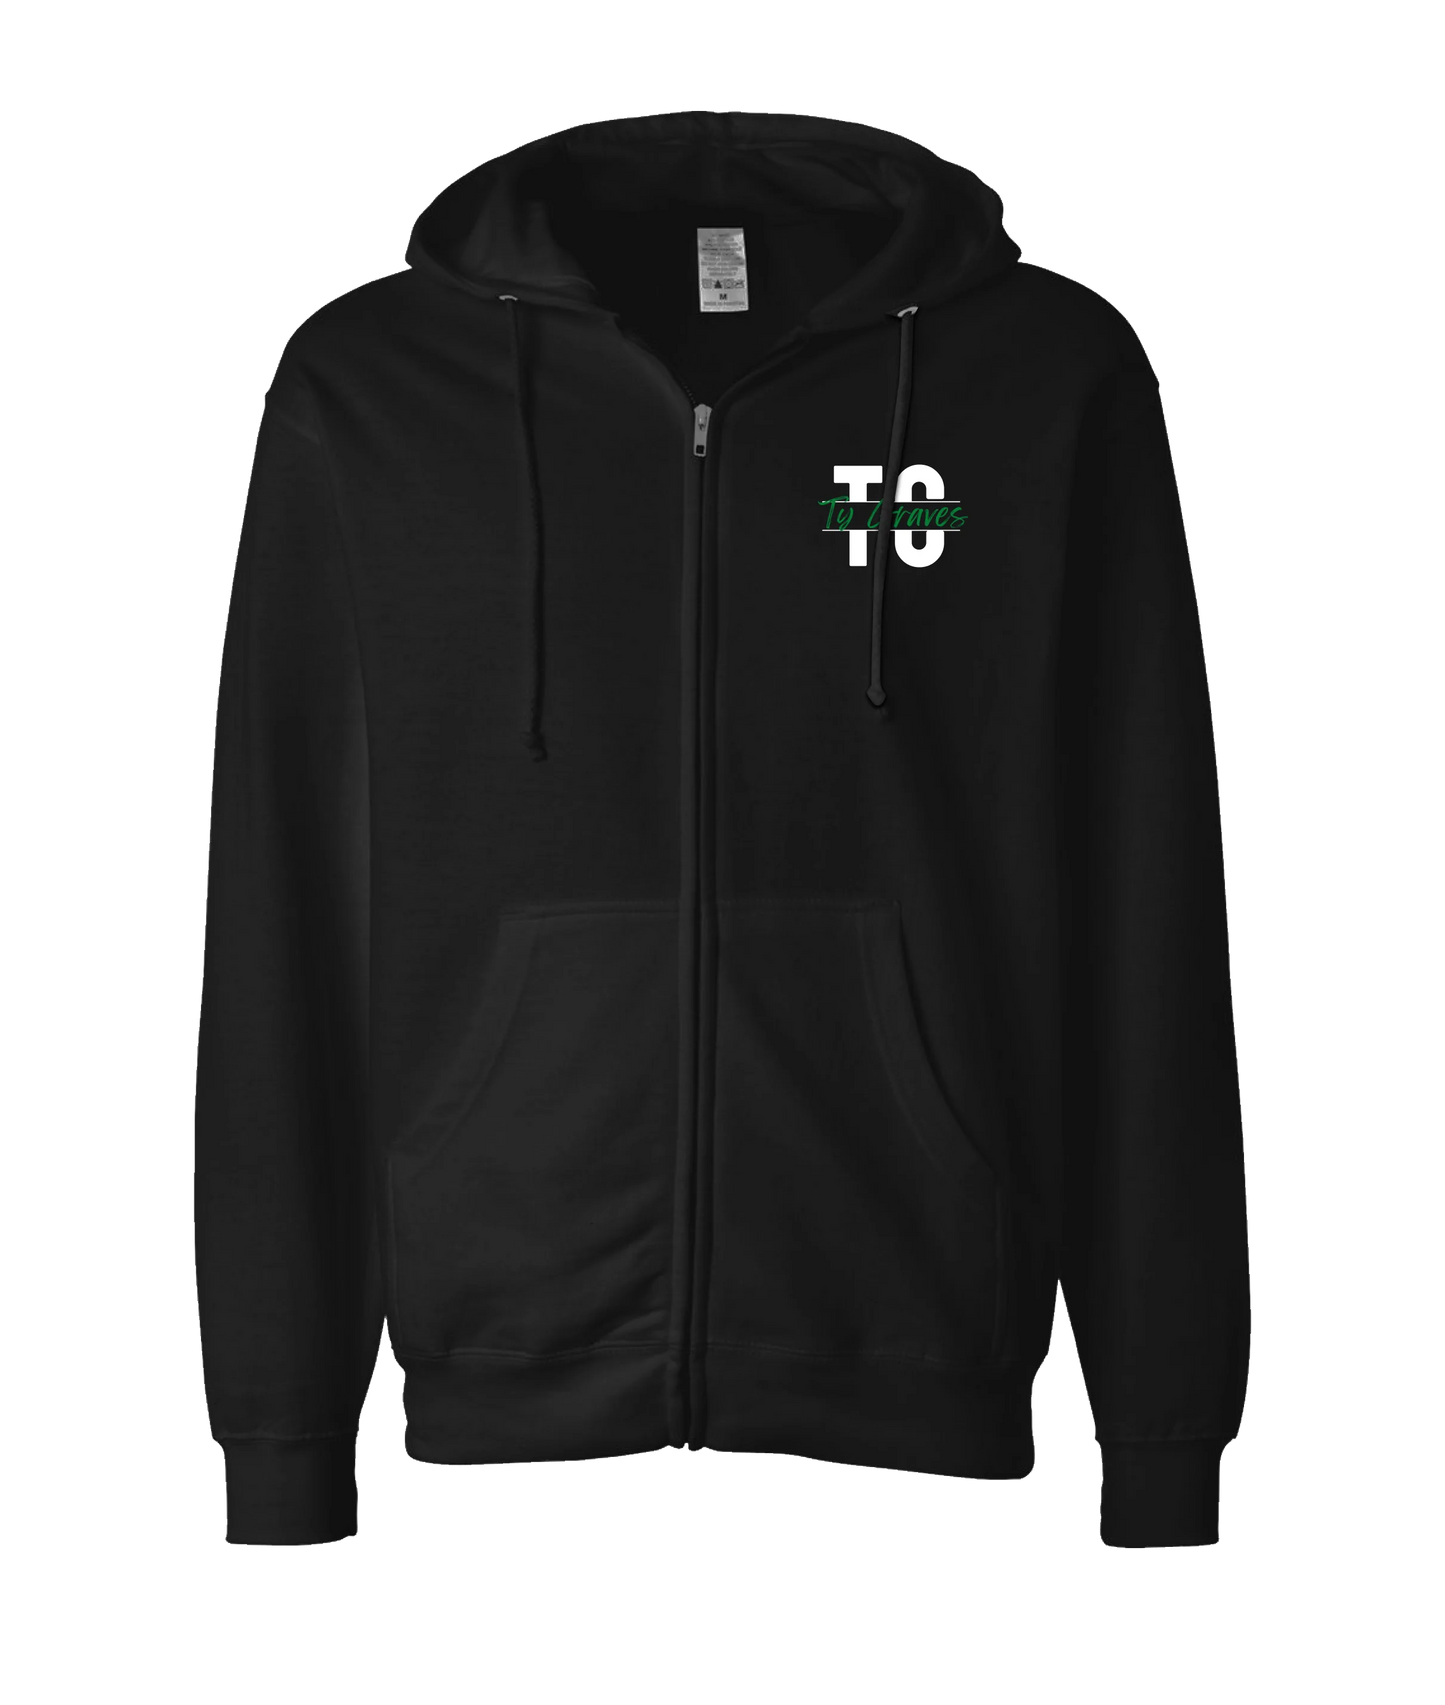 Ty Graves - Logo 2 - Black Zip Up Hoodie